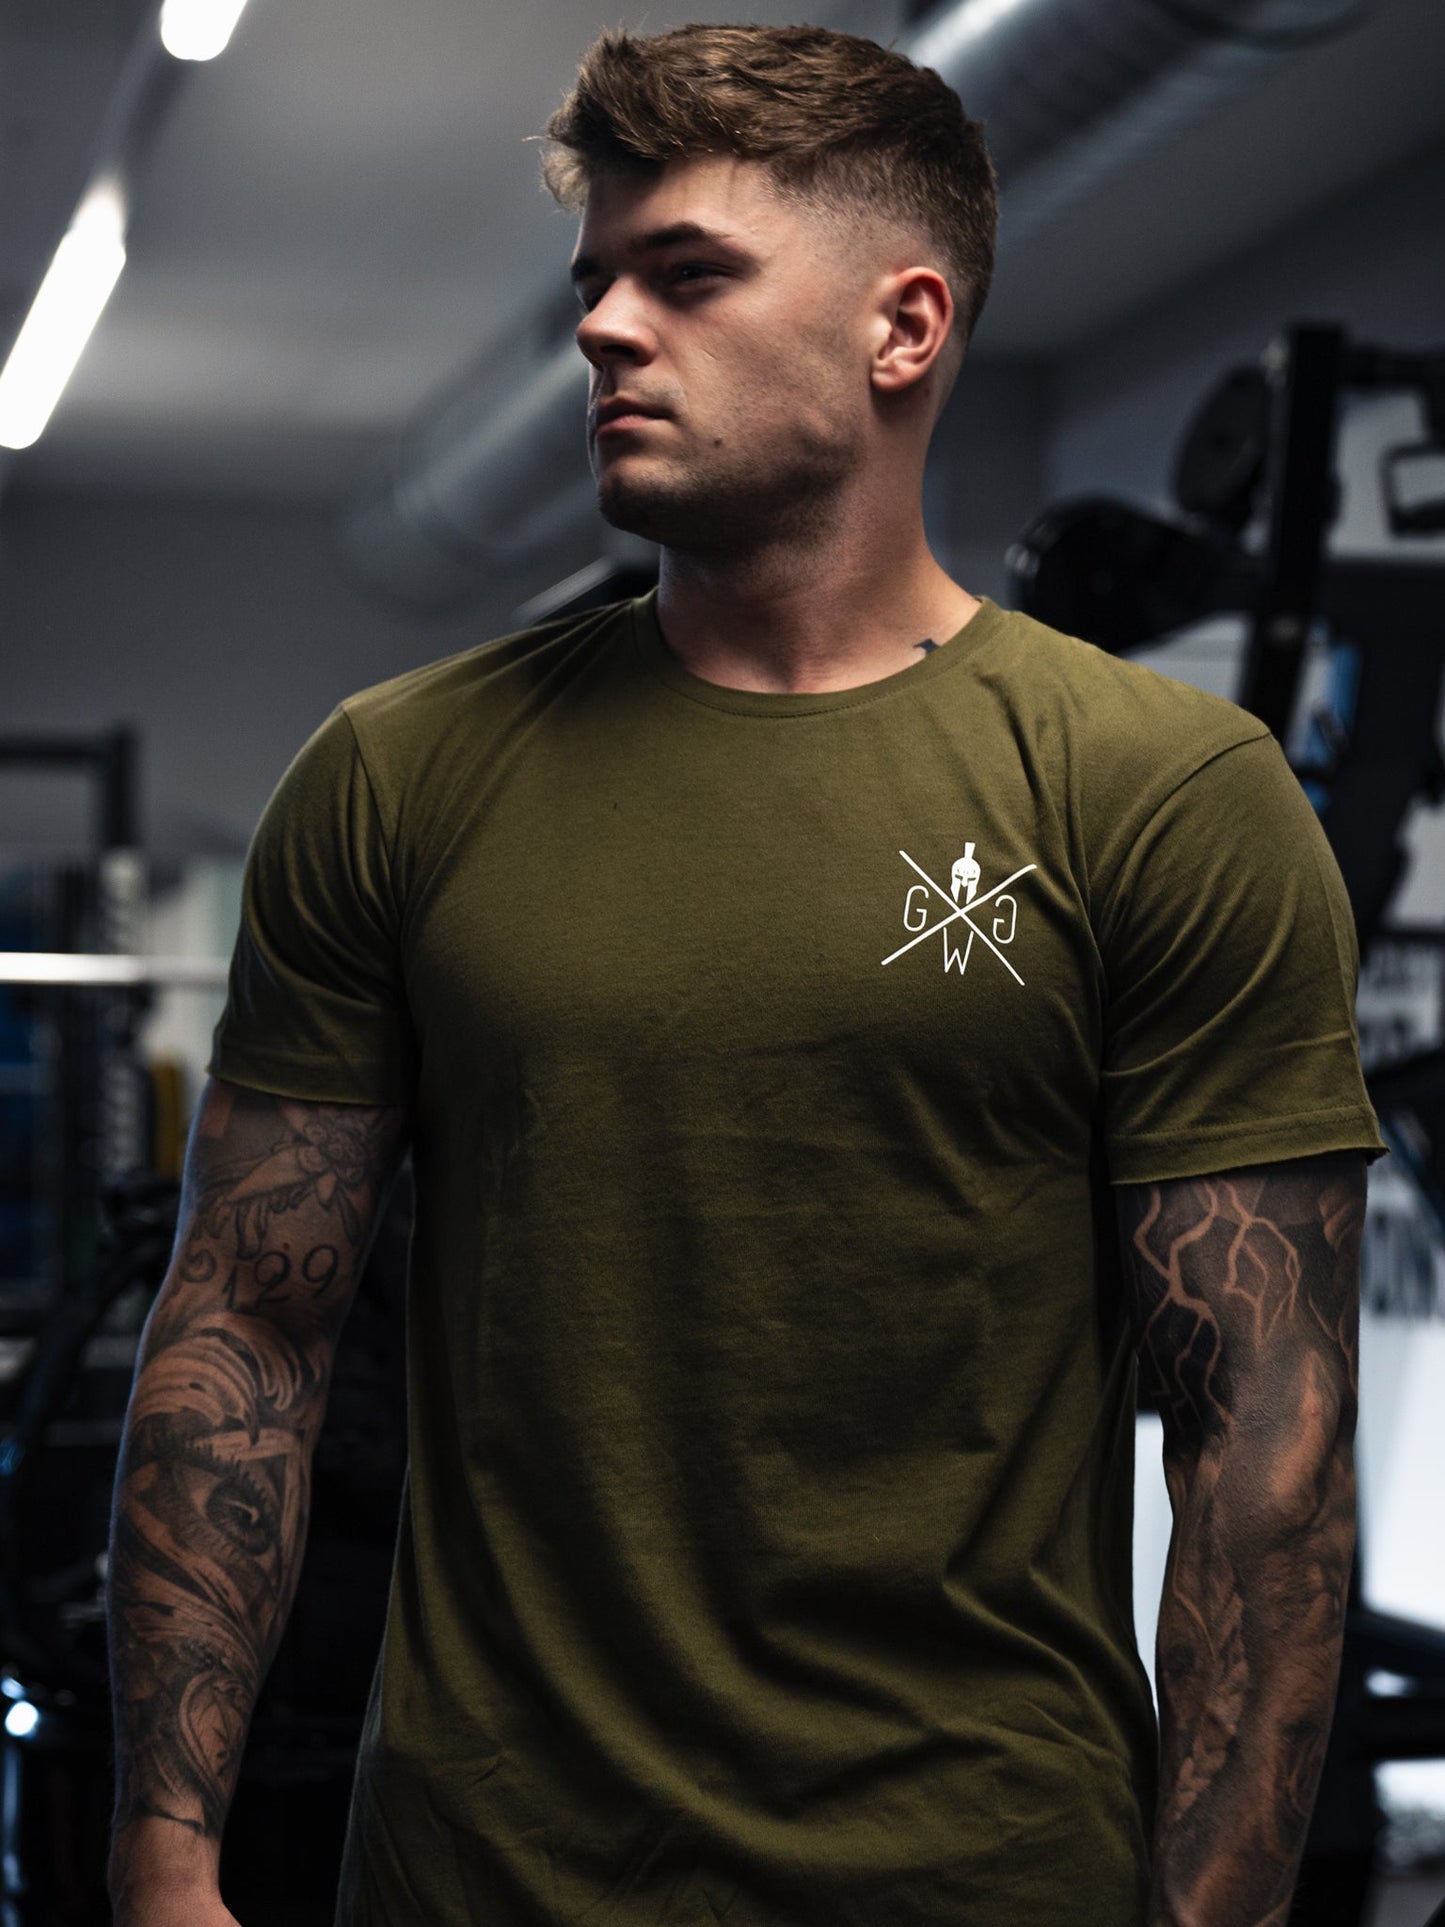 Gym Generation Valhalla T-Shirt in Olive mit gerollten Ärmeln und abgerundetem Saum für stilbewusste Männer.